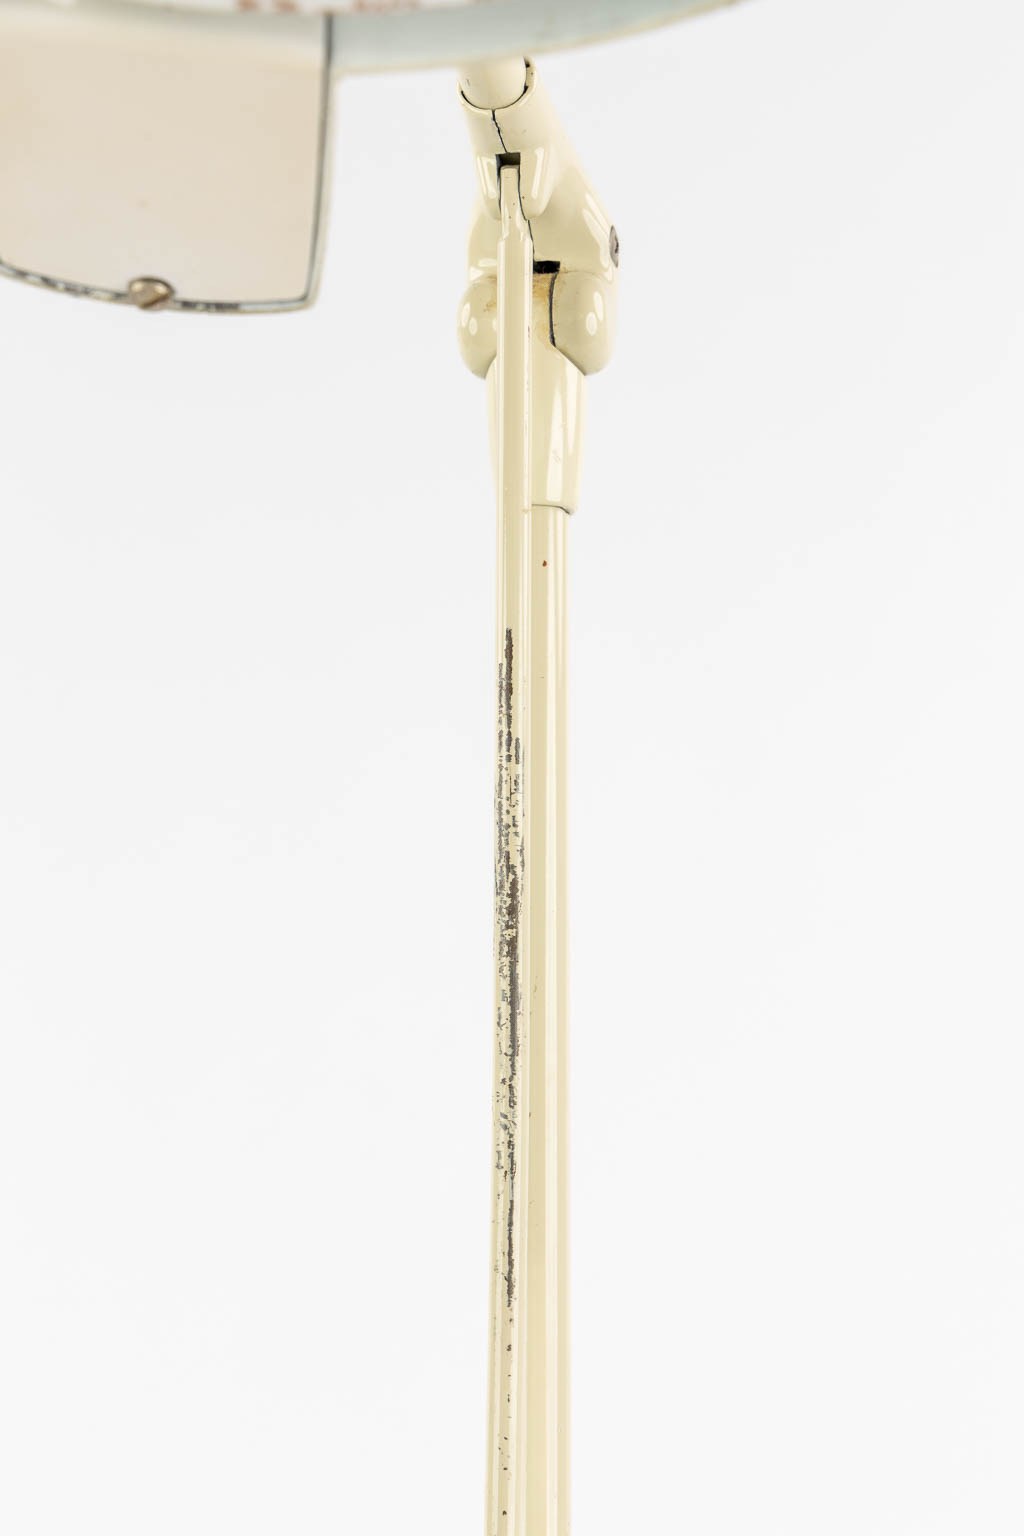 Dazor, M-1470, Een mid century leeslamp. (L:18 x W:26 x H:54 cm)